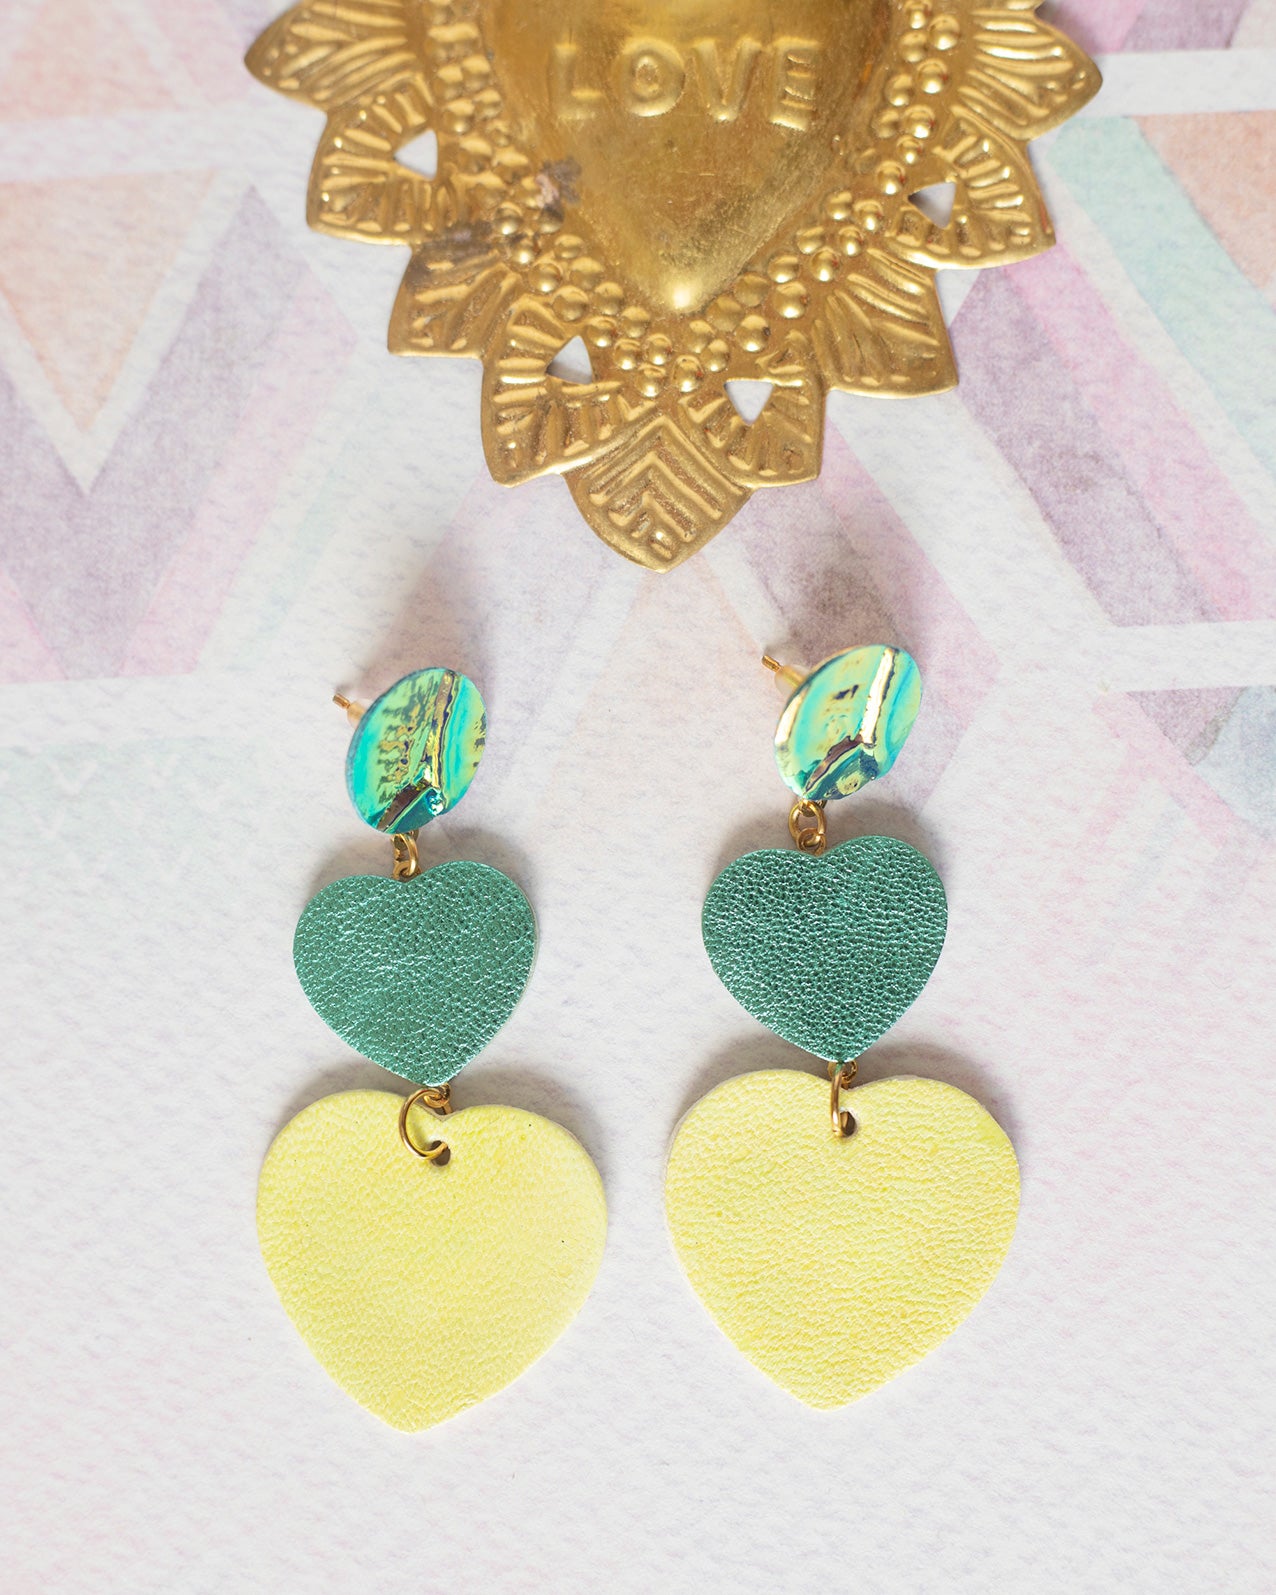 Metallic turquoise and shiny yellow double heart earrings